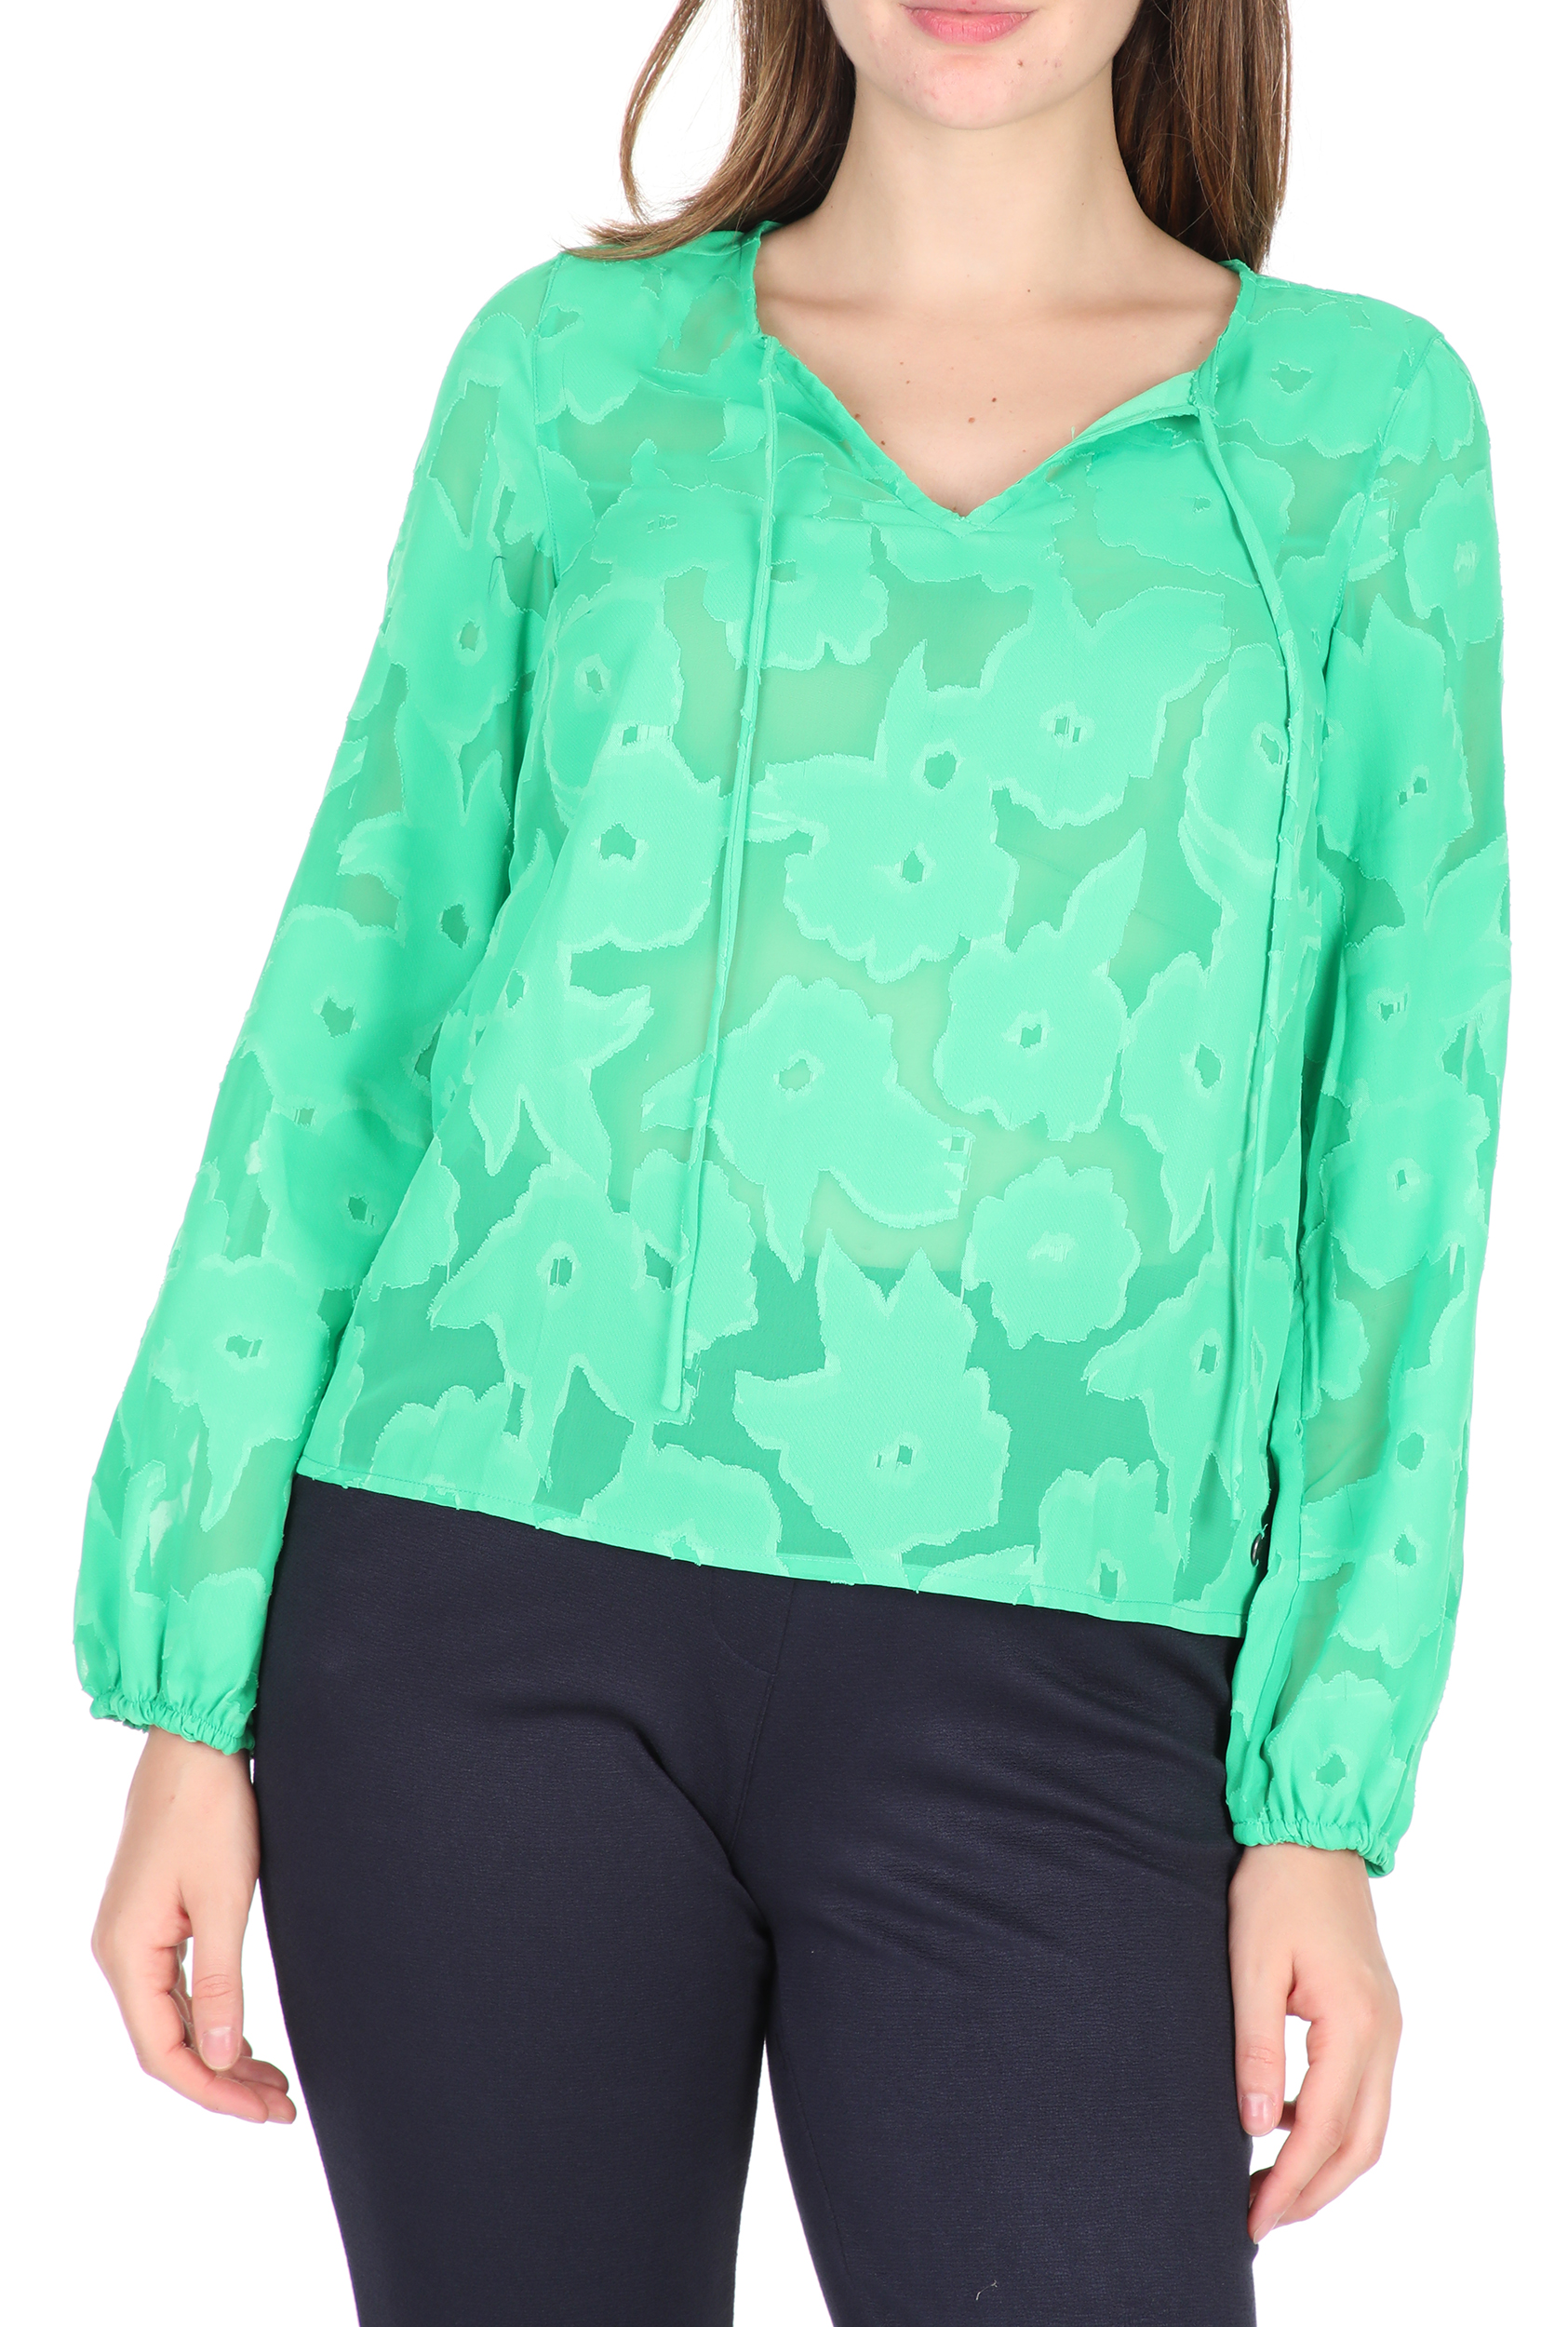 Γυναικεία/Ρούχα/Μπλούζες/Μακρυμάνικες GARCIA JEANS - Γυναικεία μπλούζα GARCIA JEANS πράσινη